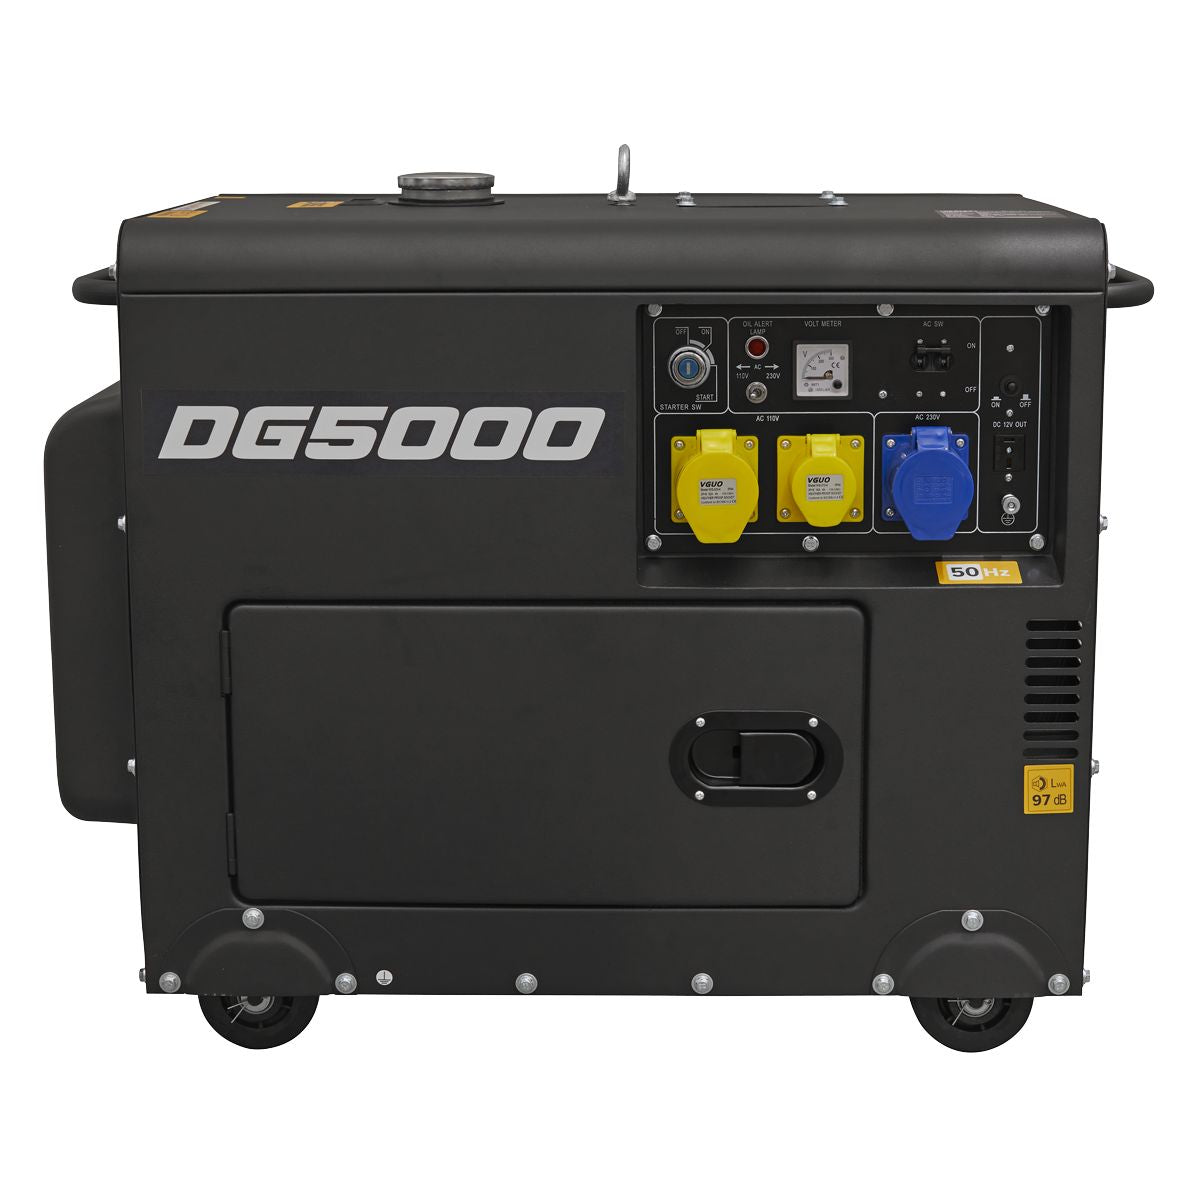 Sealey DG5000 4-Stroke Diesel Generator 230V/5000W